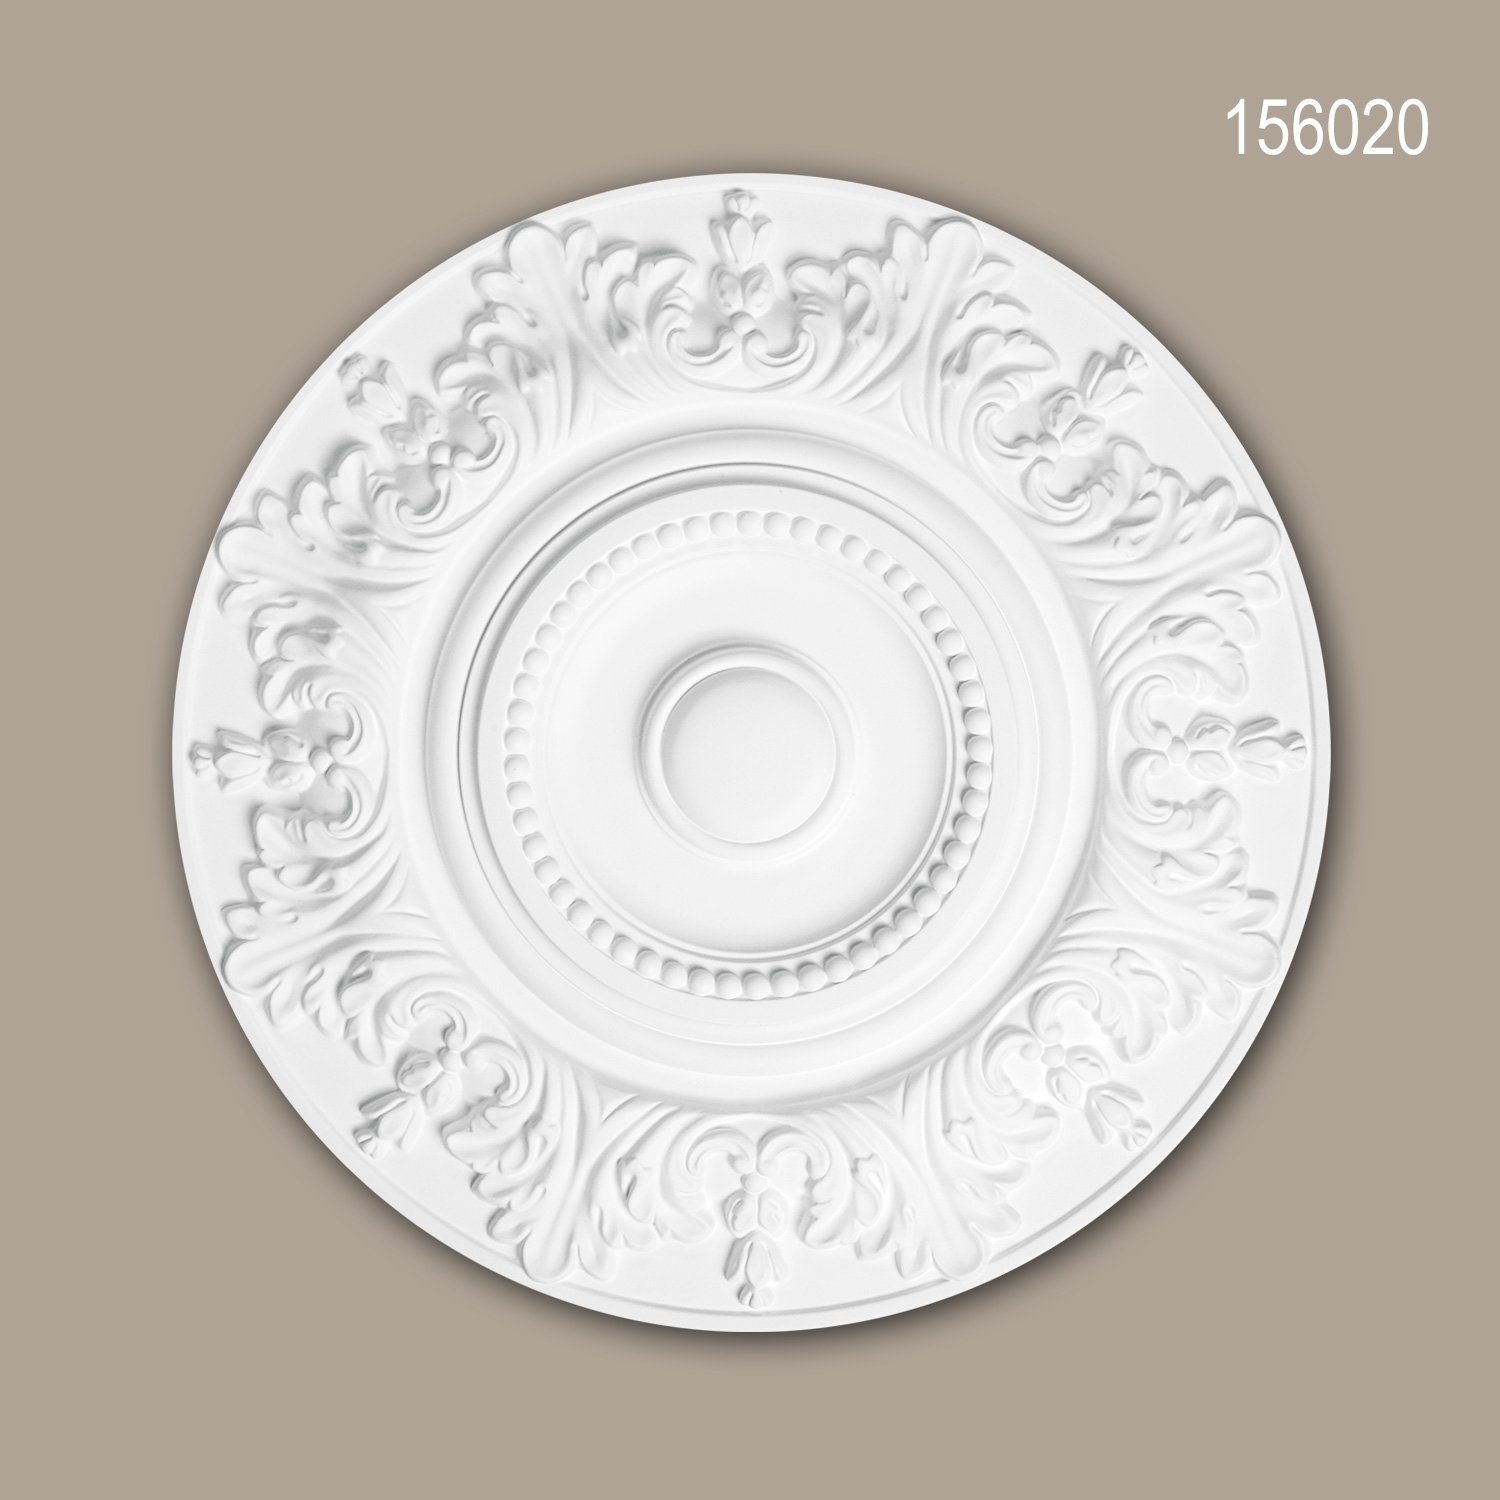 Profhome Decken-Rosette 156020 (Rosette, 1 St., Deckenrosette, Medallion, Stuckrosette, Deckenelement, Zierelement, Durchmesser 47 cm), weiß, vorgrundiert, Stil: Rokoko / Barock